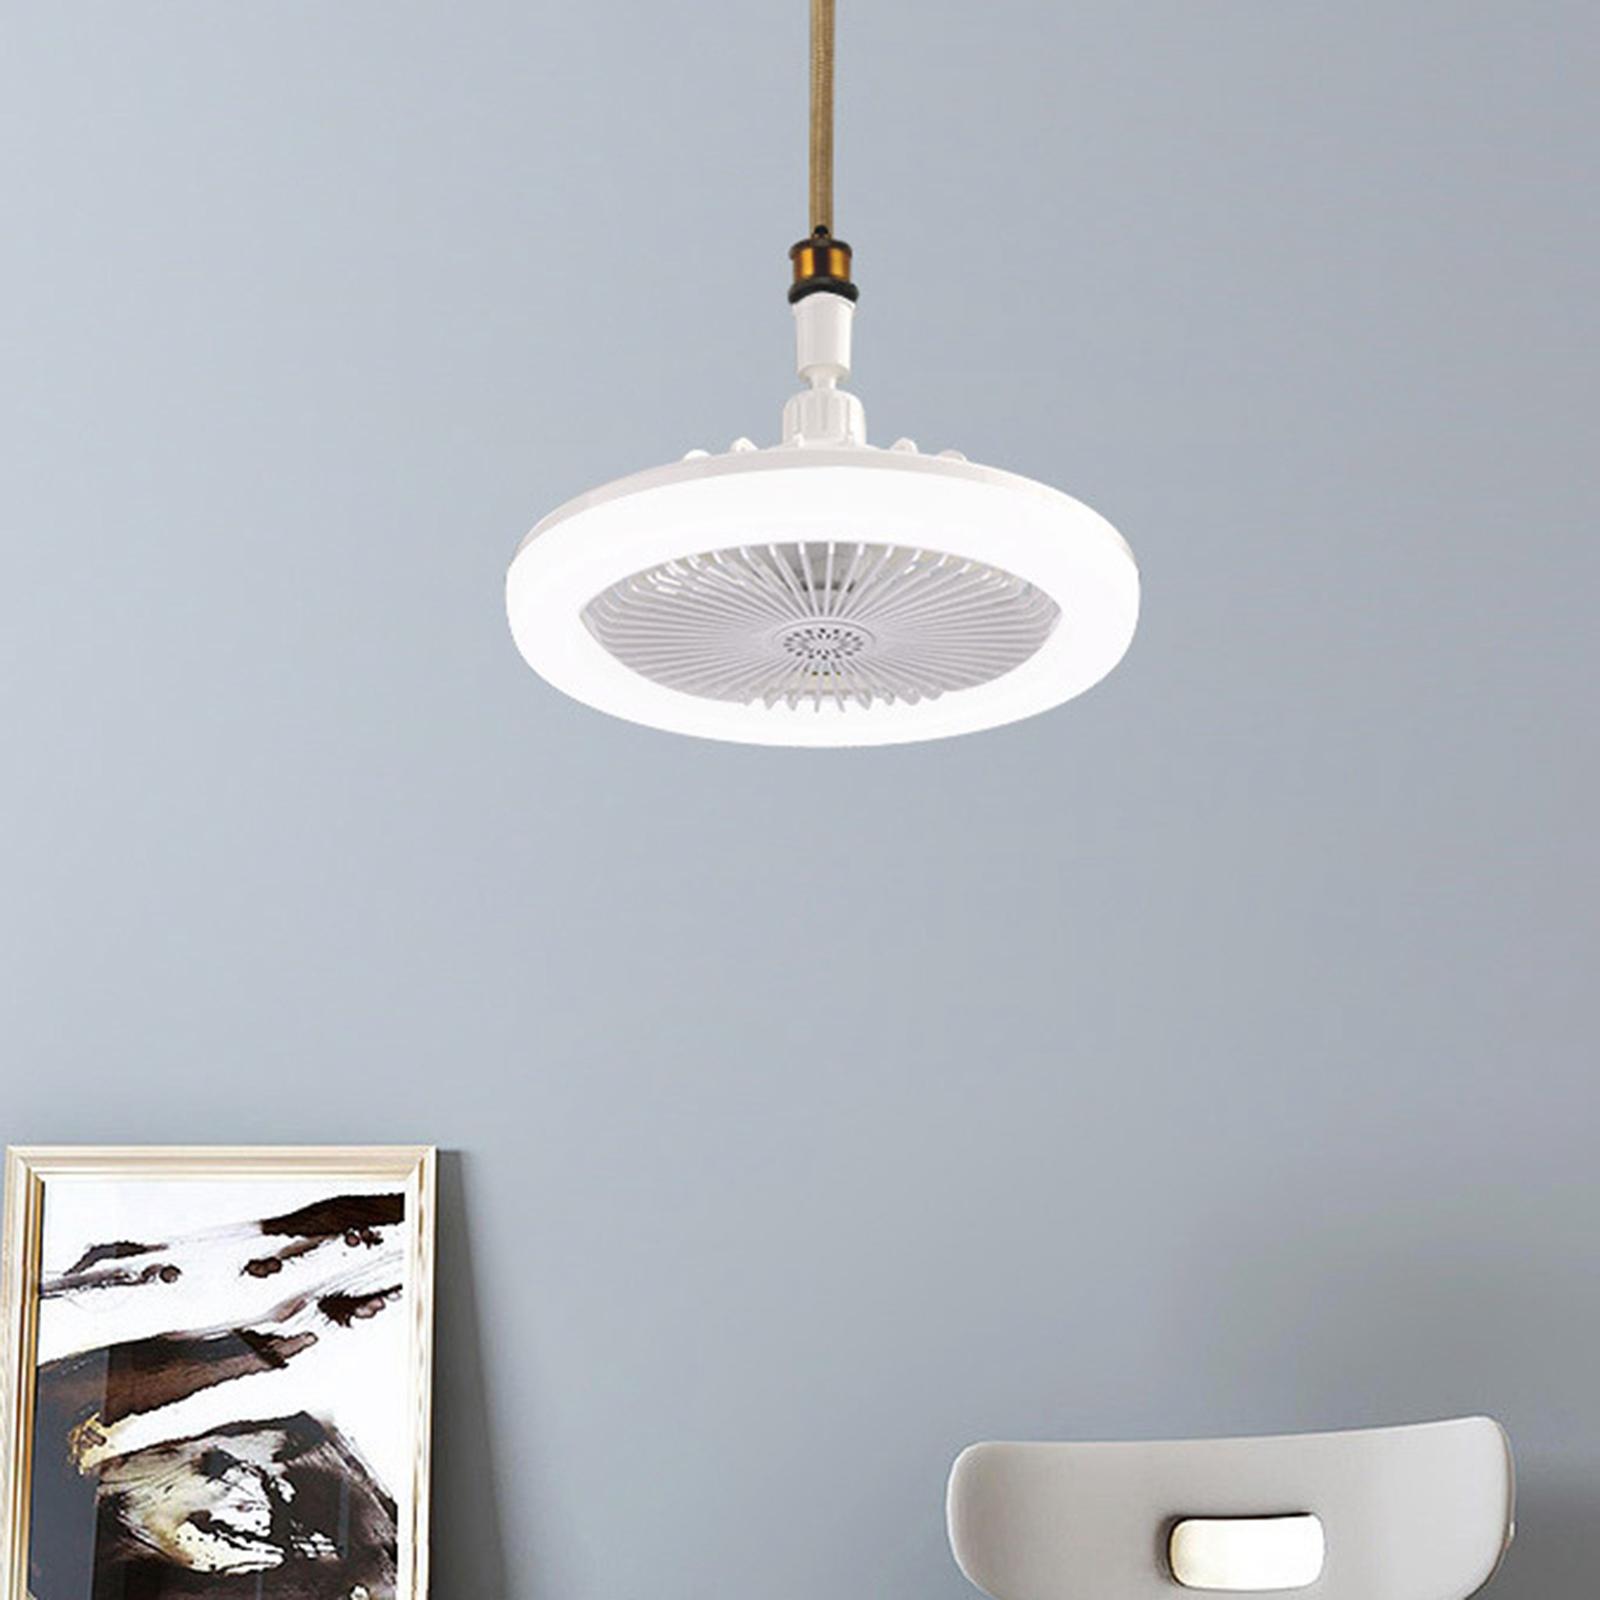 Ceiling Fan Lights E27 Fan Light for Bedroom Dining Room Office White